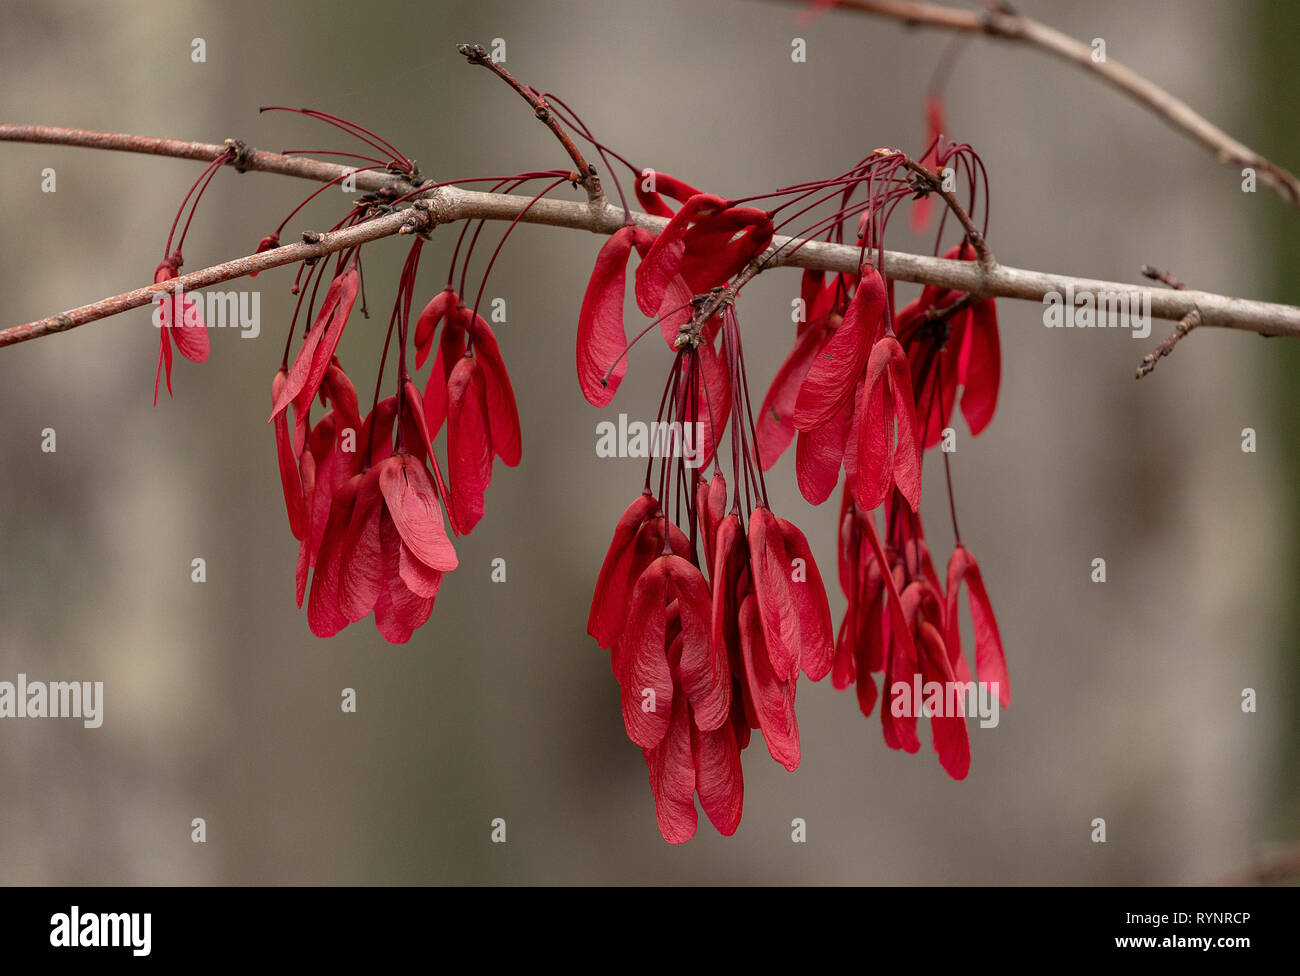 Rote Ahorn, Acer rubrum Obst im Winter, mit schönen roten Samaras. Florida. Stockfoto